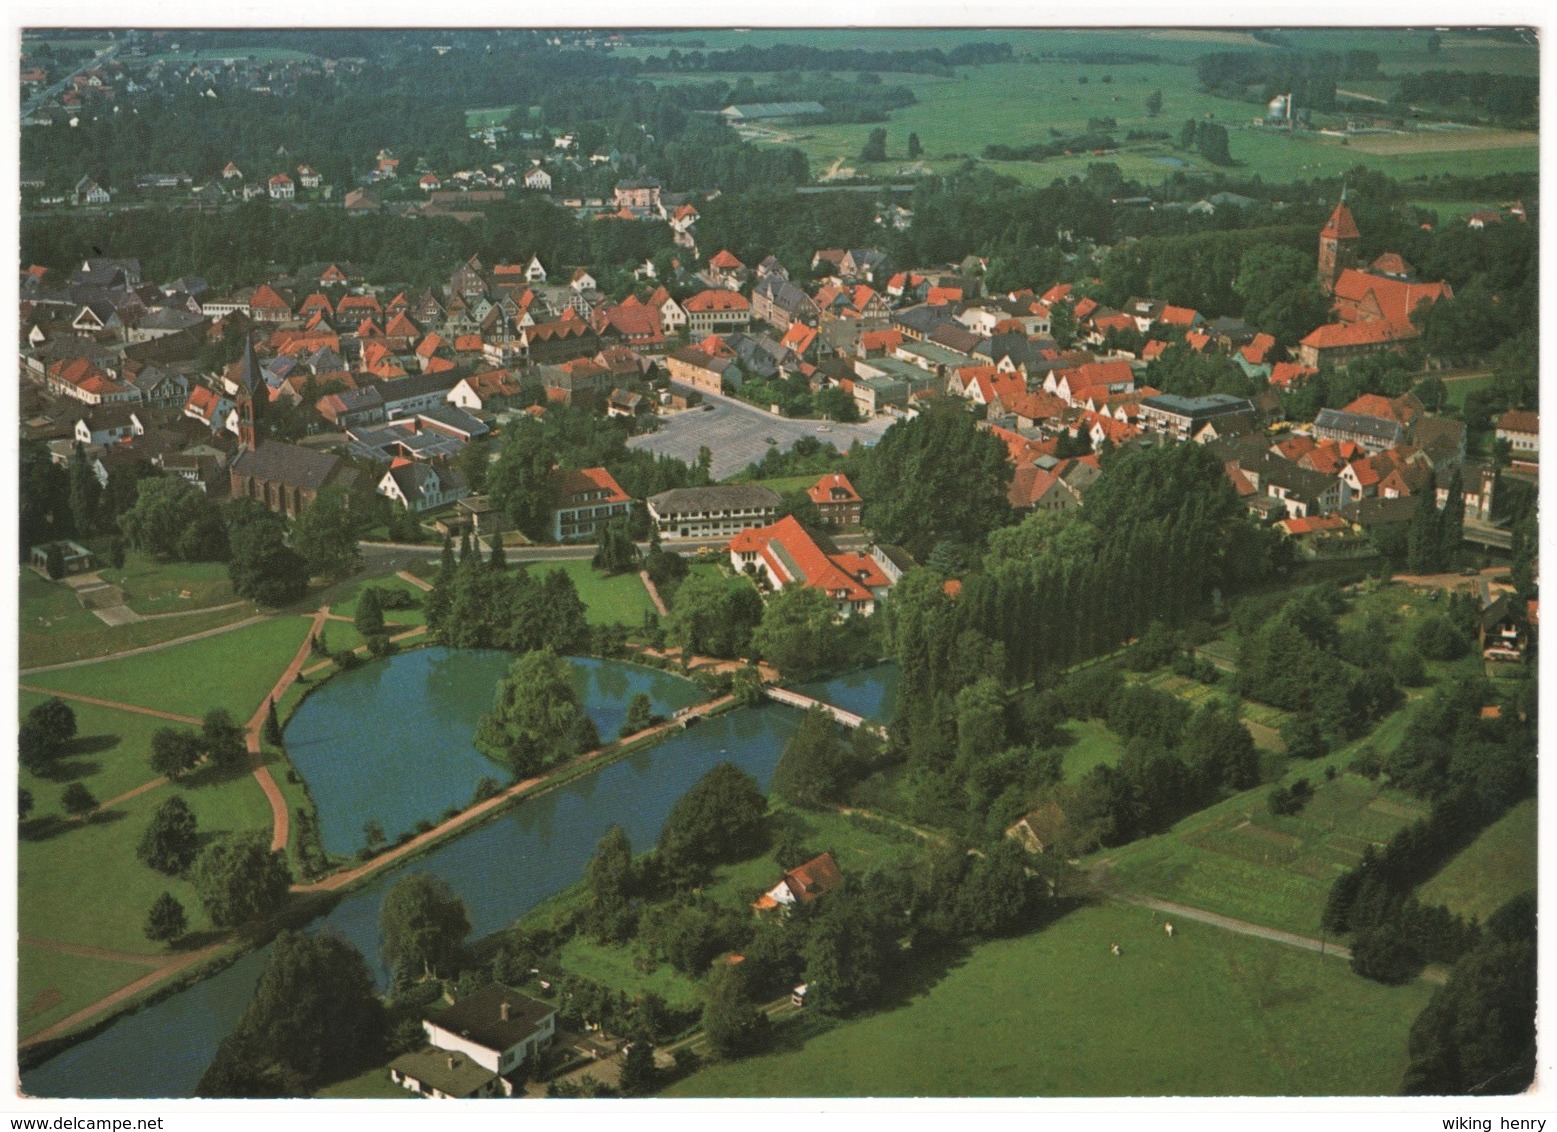 Wildeshausen - Luftbild 1 - Wildeshausen